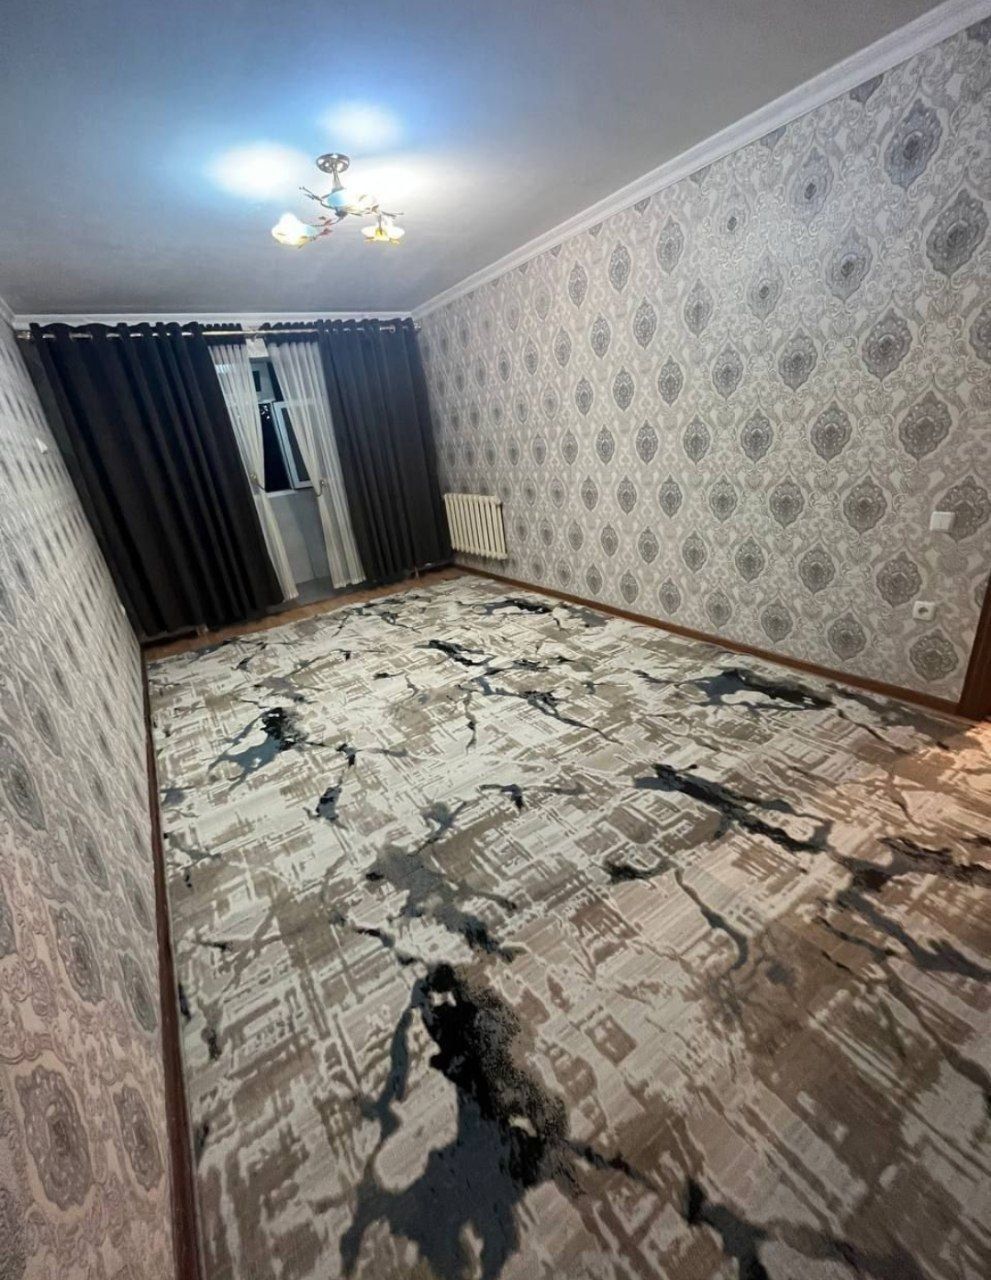 Однокомнатная квартира в ташкенте. Продаётся 2-х комнатная квартира. 2 Комнатная квартира в Ташкенте аренда.